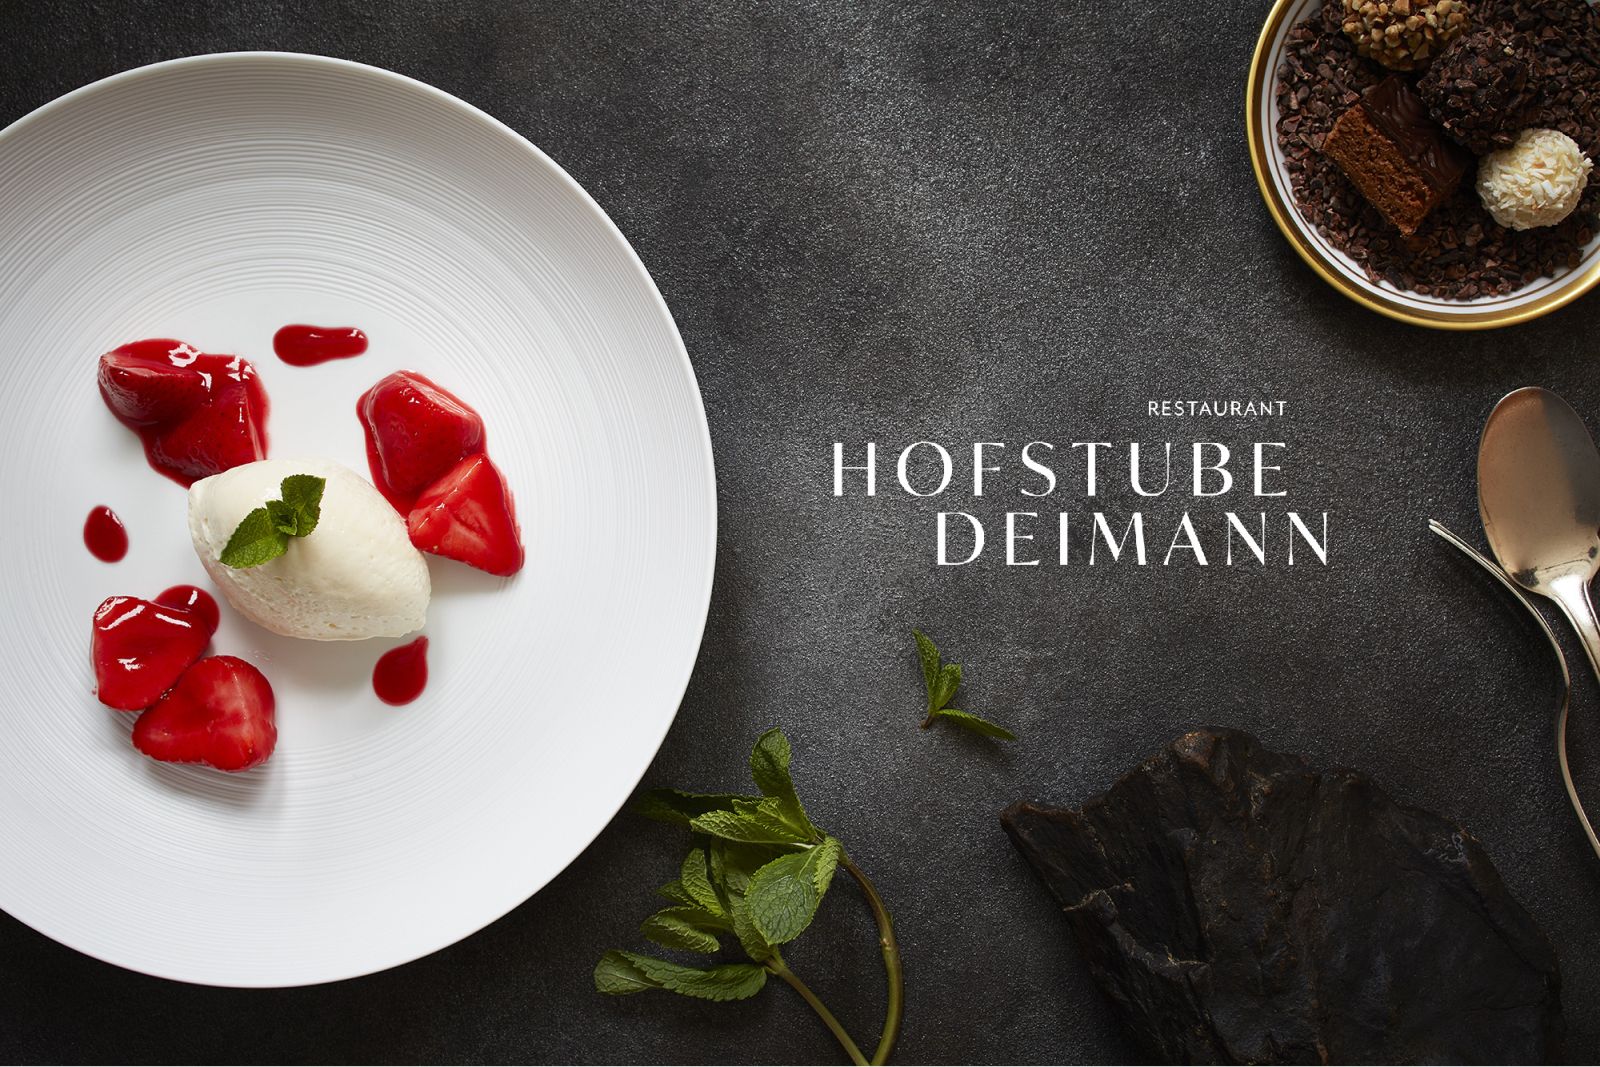 Logo and dessert example of the star restaurant Hofstube Deimann